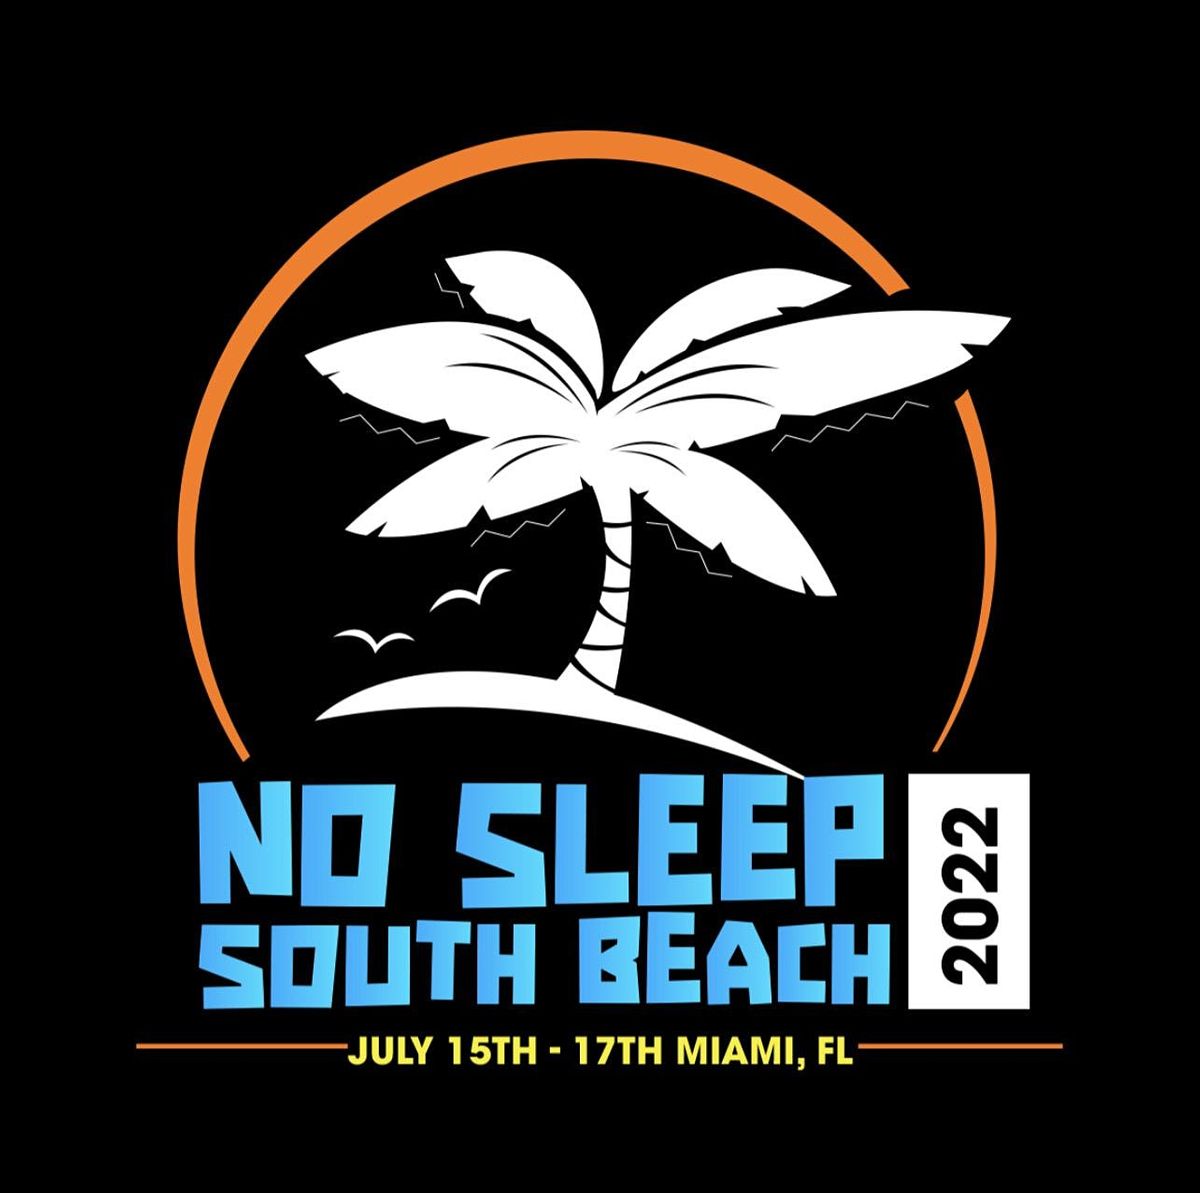 9th Annual No Sleep South Beach Weekend July 15th-17th